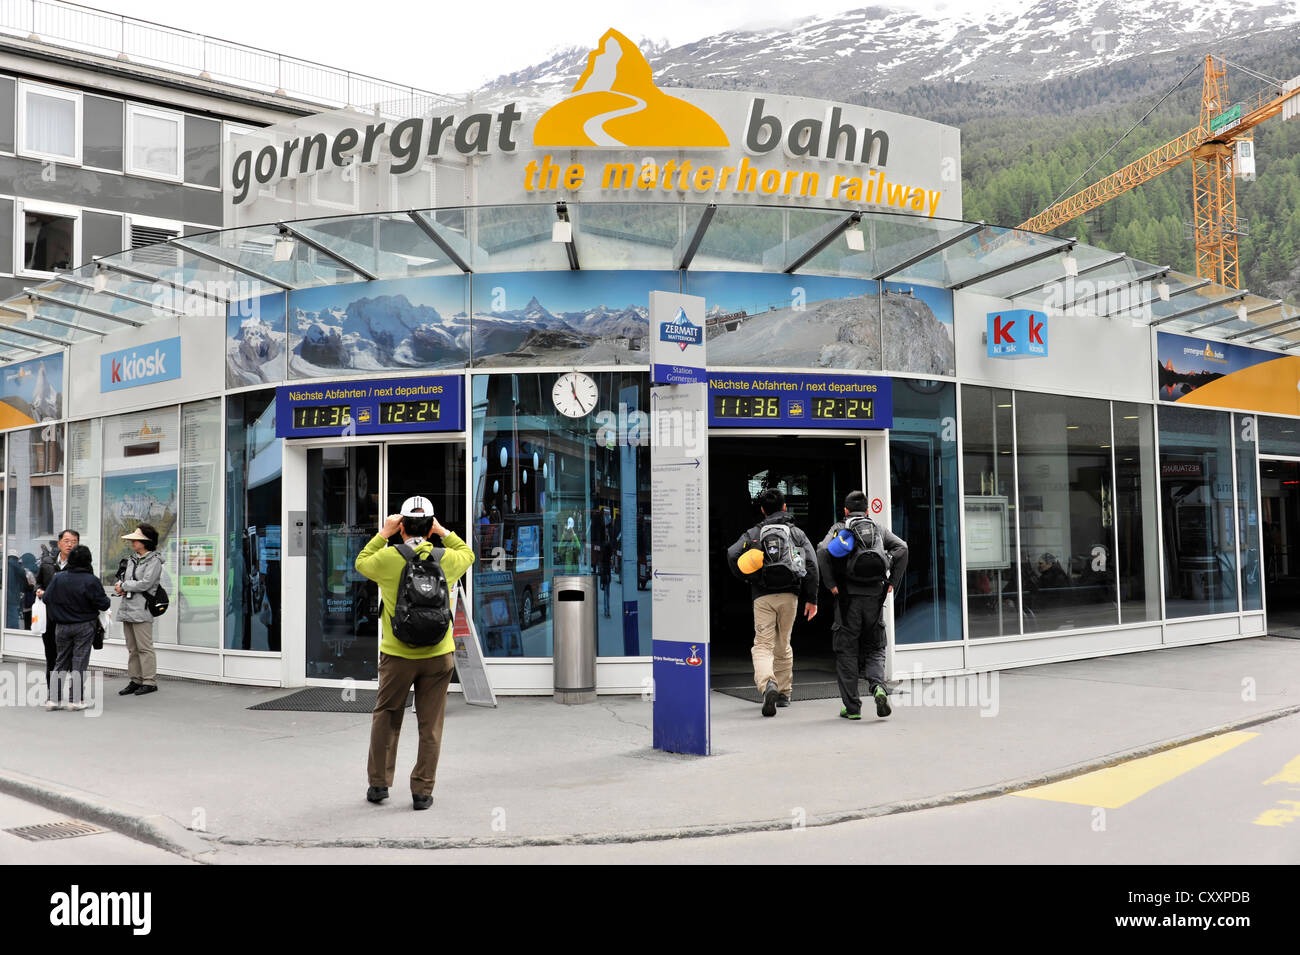 Gornergrat Bahn cog railway, valley station, Zermatt, canton of Valais, Swiss Alps, Switzerland, Europe Stock Photo